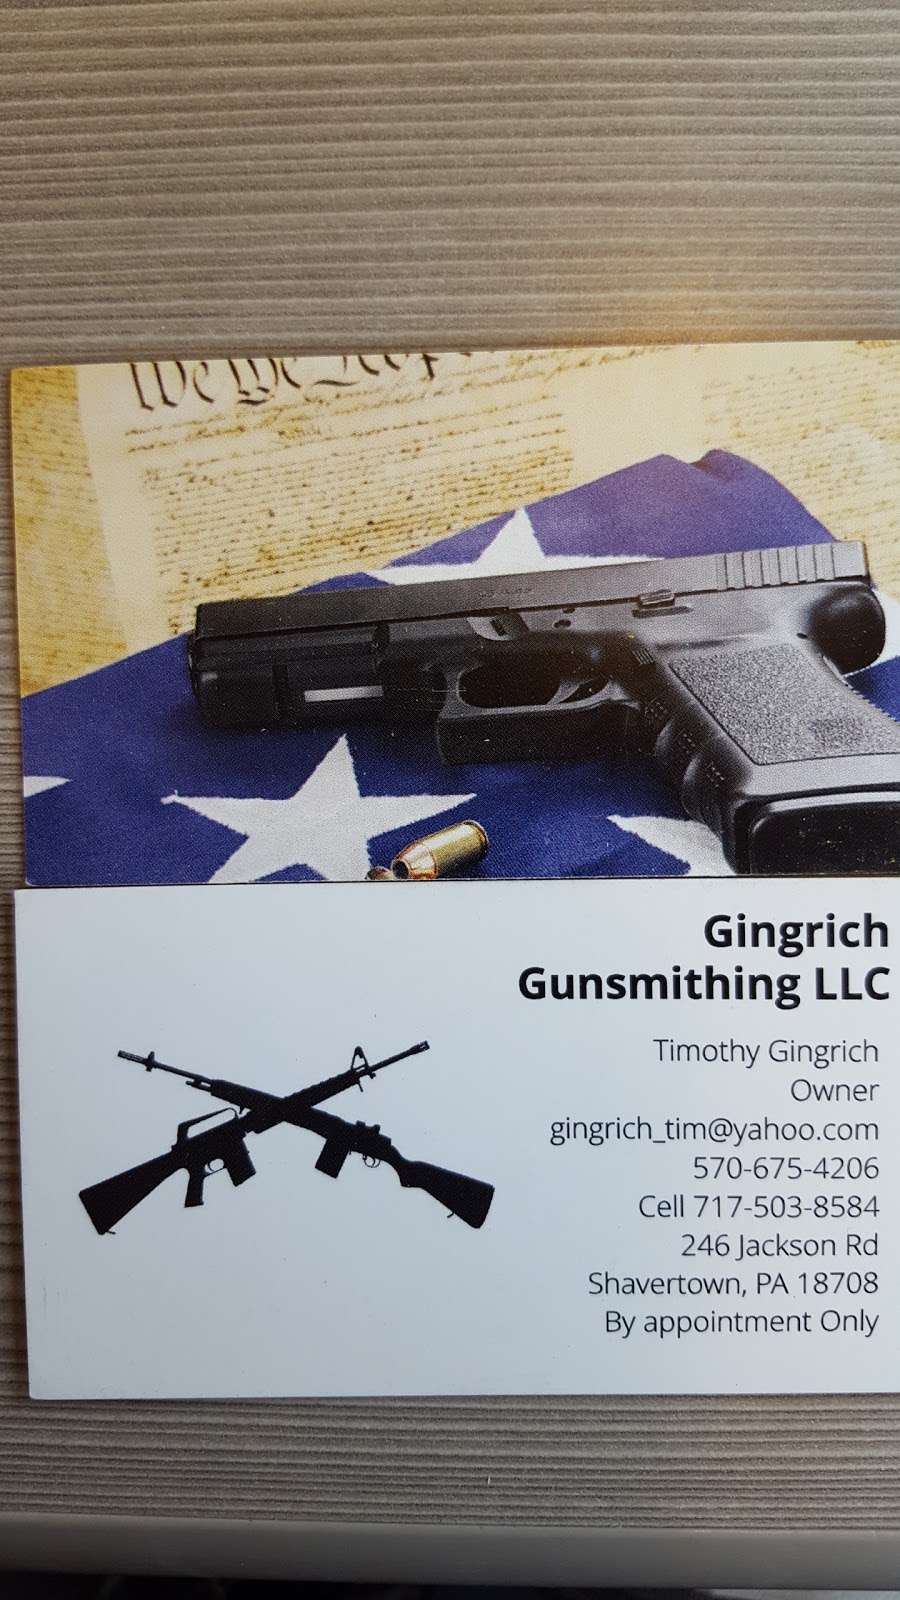 Gingrich Gunsmithing LLC | 246 Jackson Rd, Shavertown, PA 18708 | Phone: (717) 503-8584